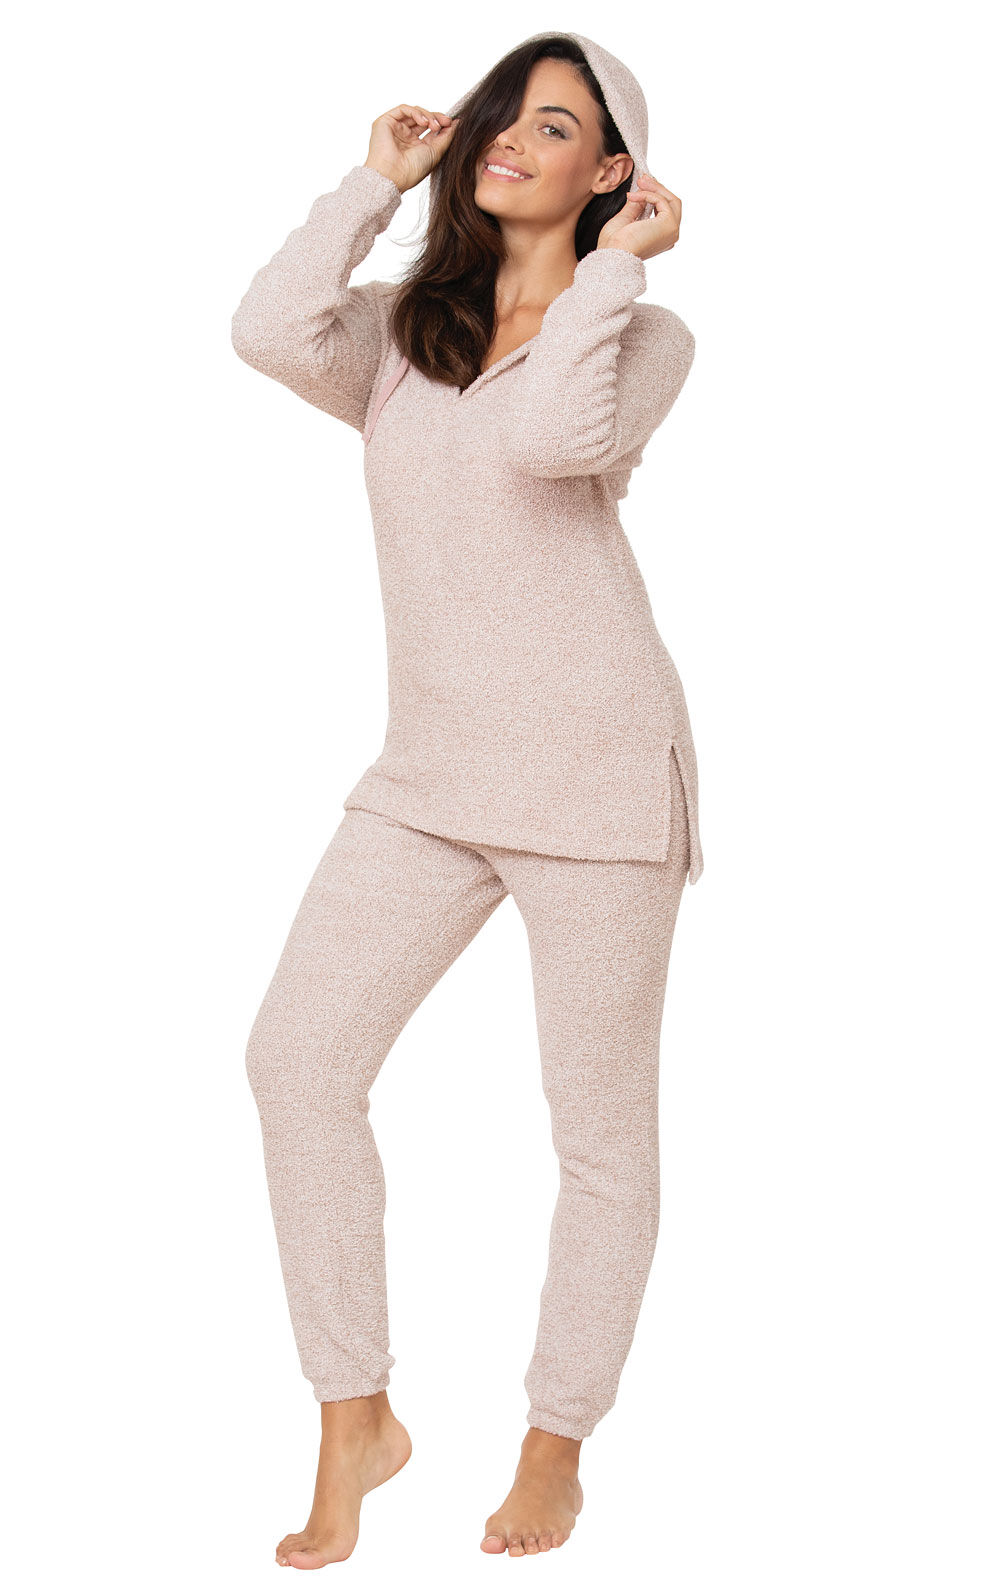 Cozy Escape Pajamas - Mauve in Women's Jersey Knit Blends